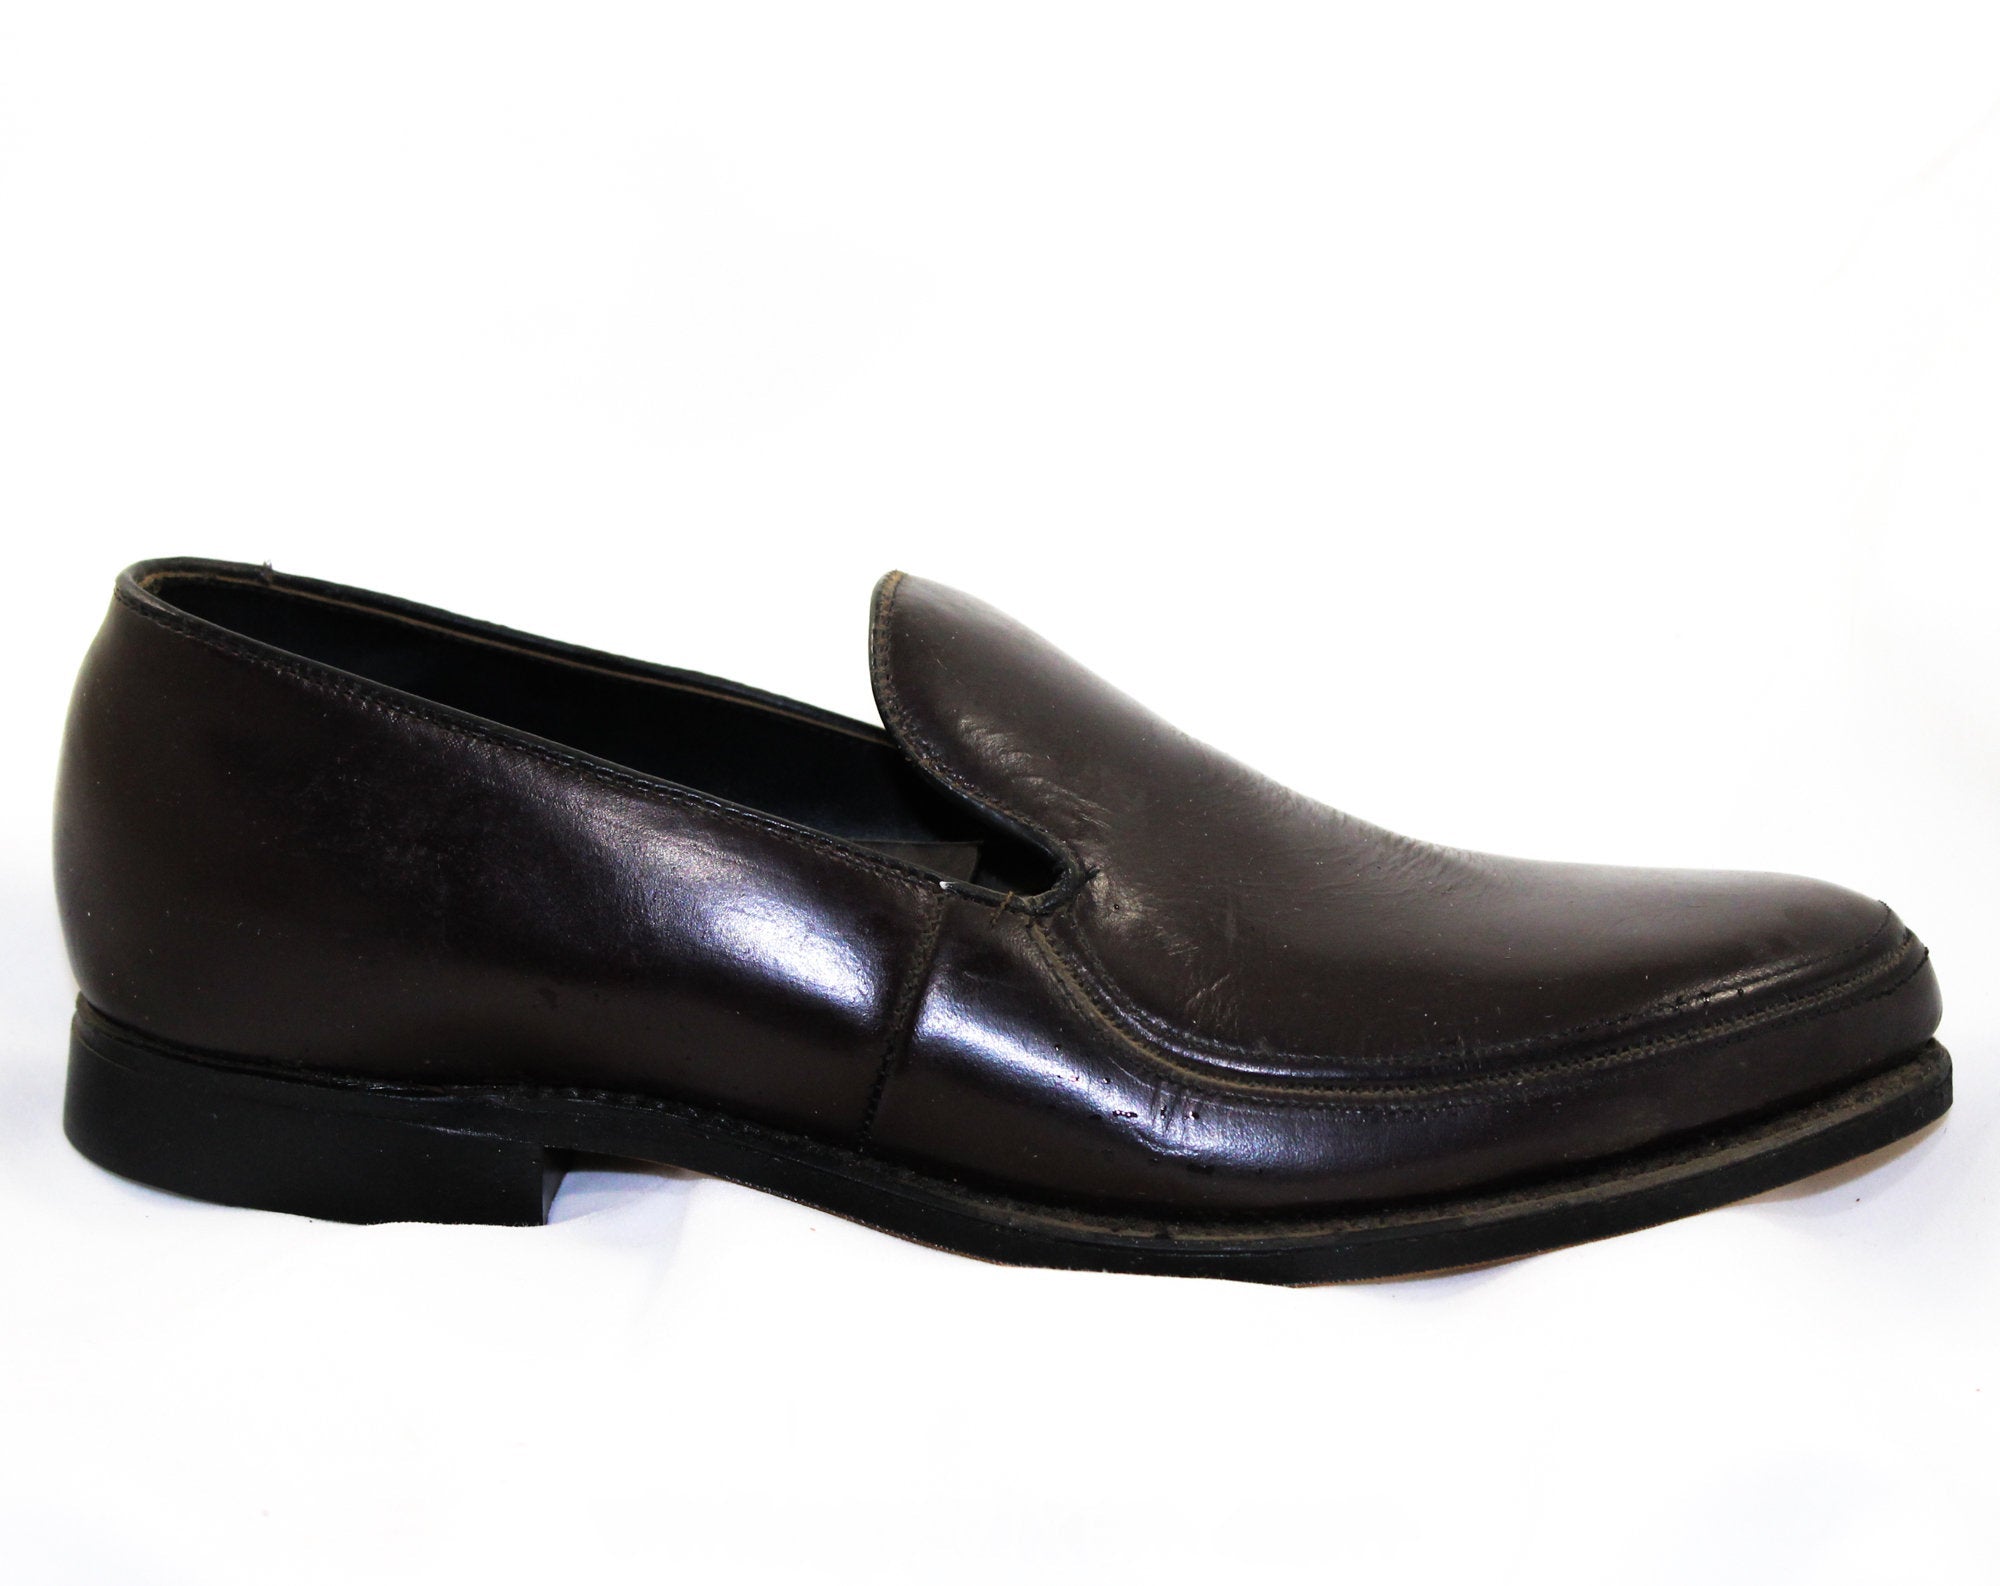 Vintage Shoes - Quality men's shoes